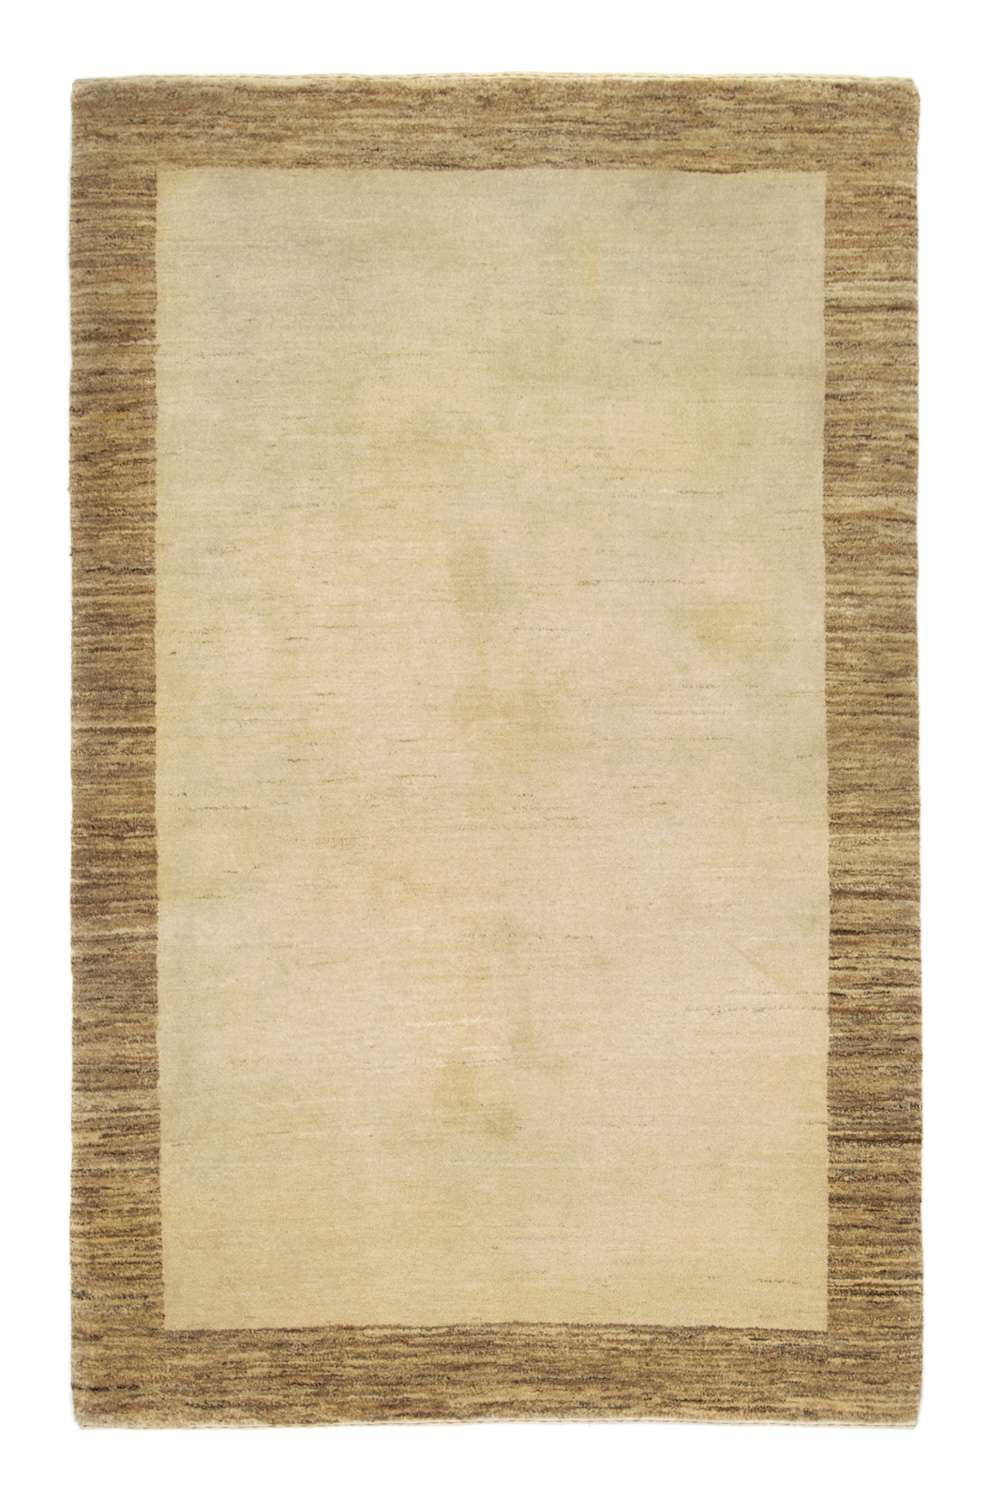 Gabbeh Rug - Indus - 188 x 124 cm - beige